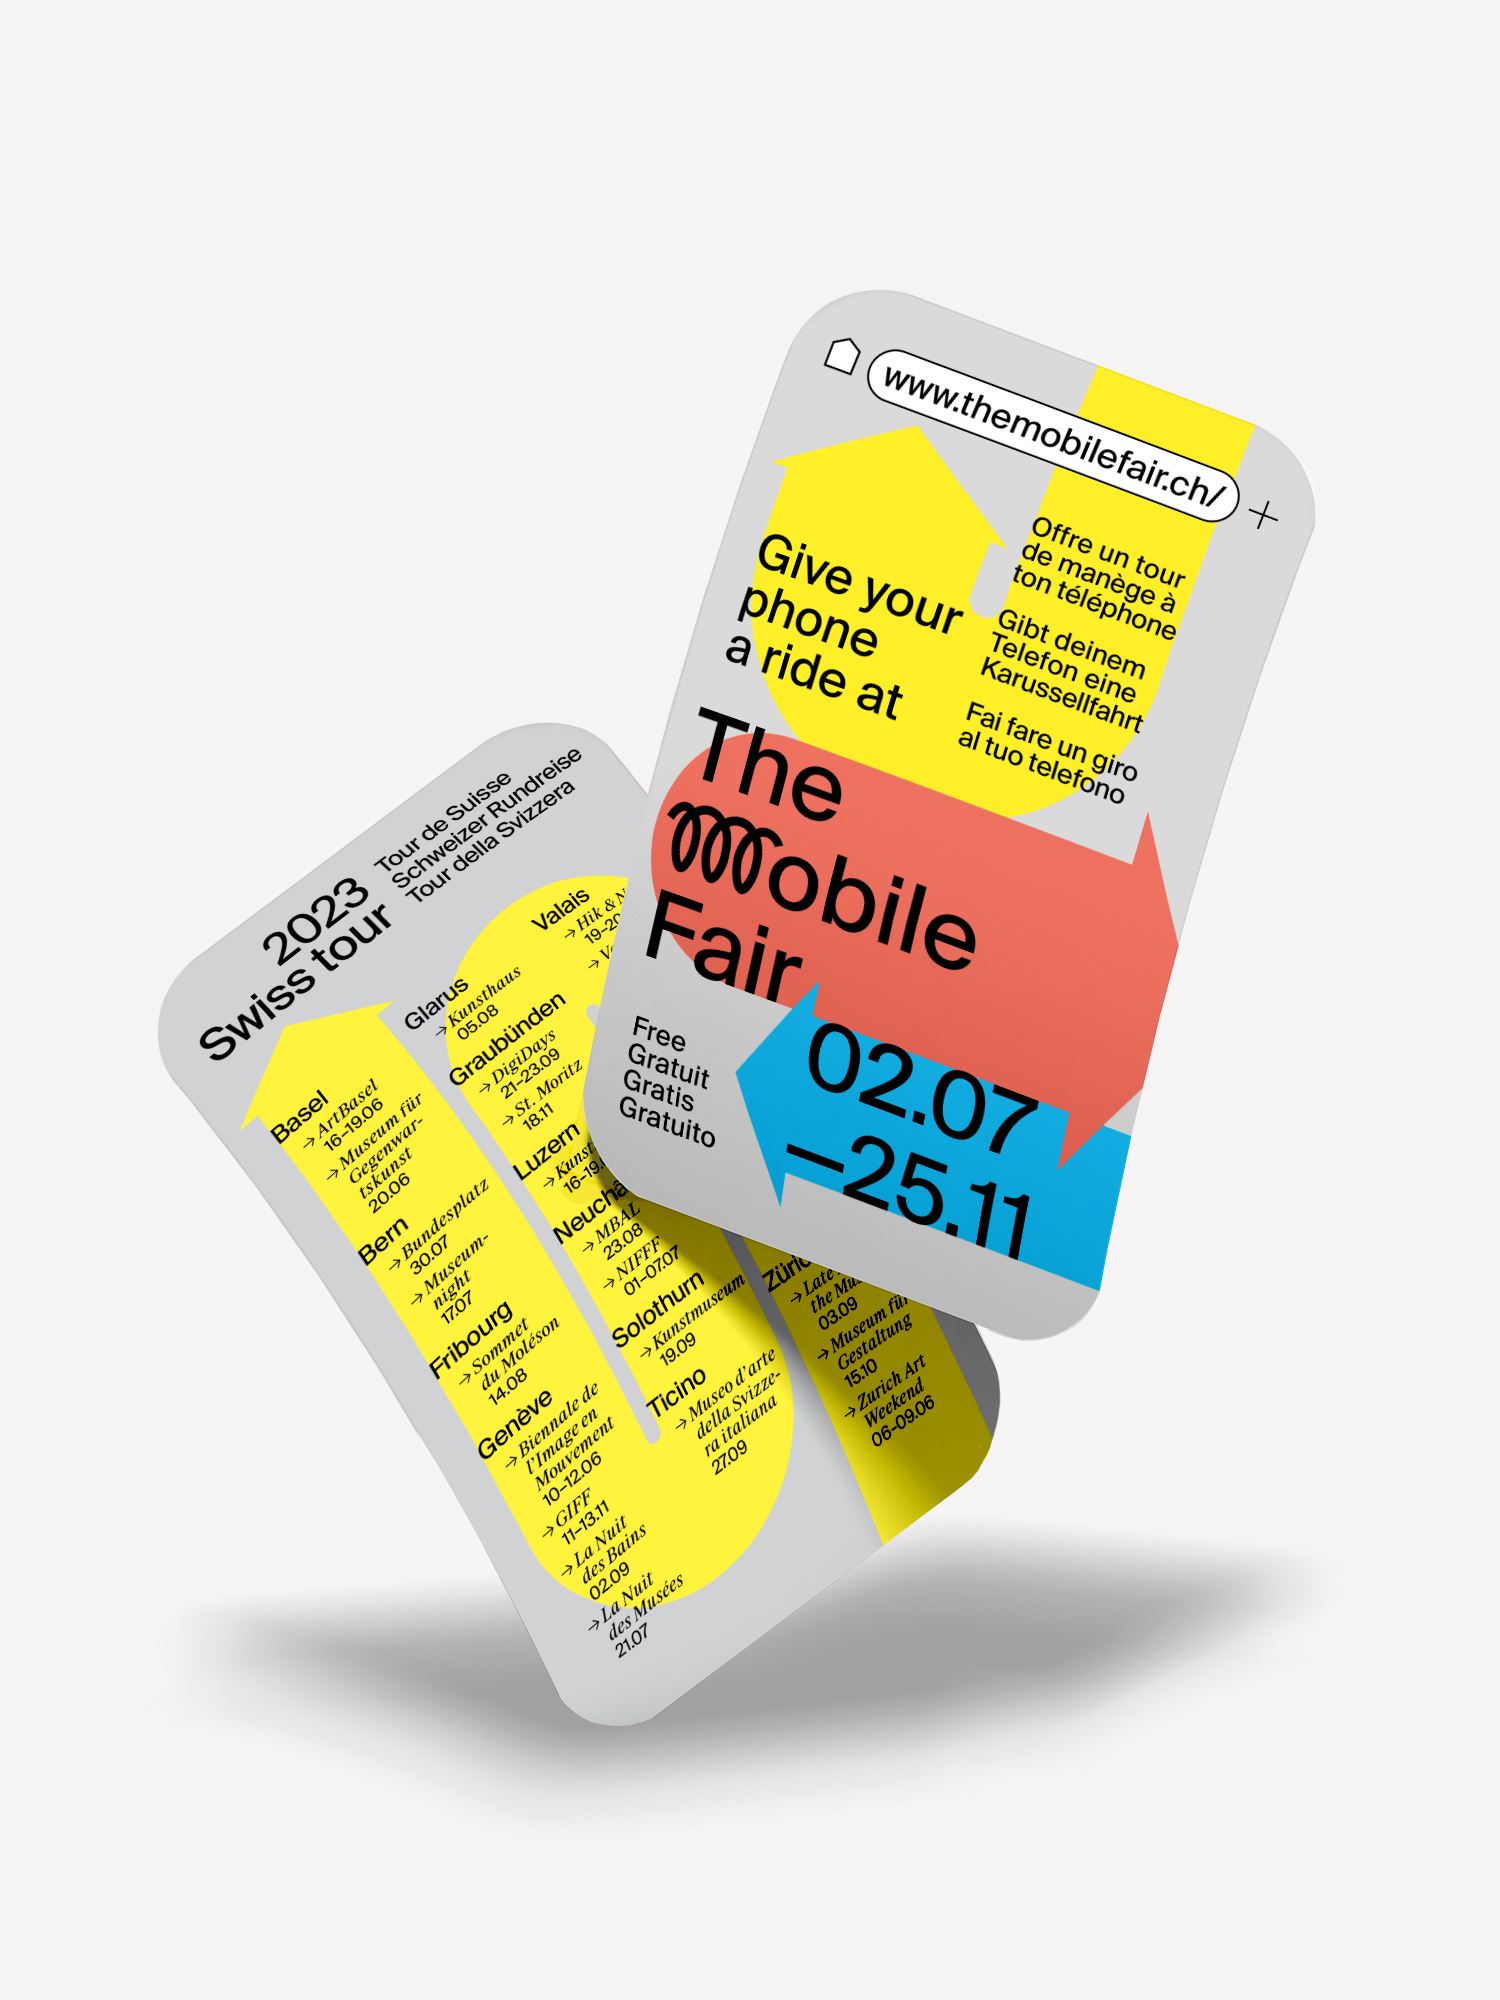 The Mobile Fair